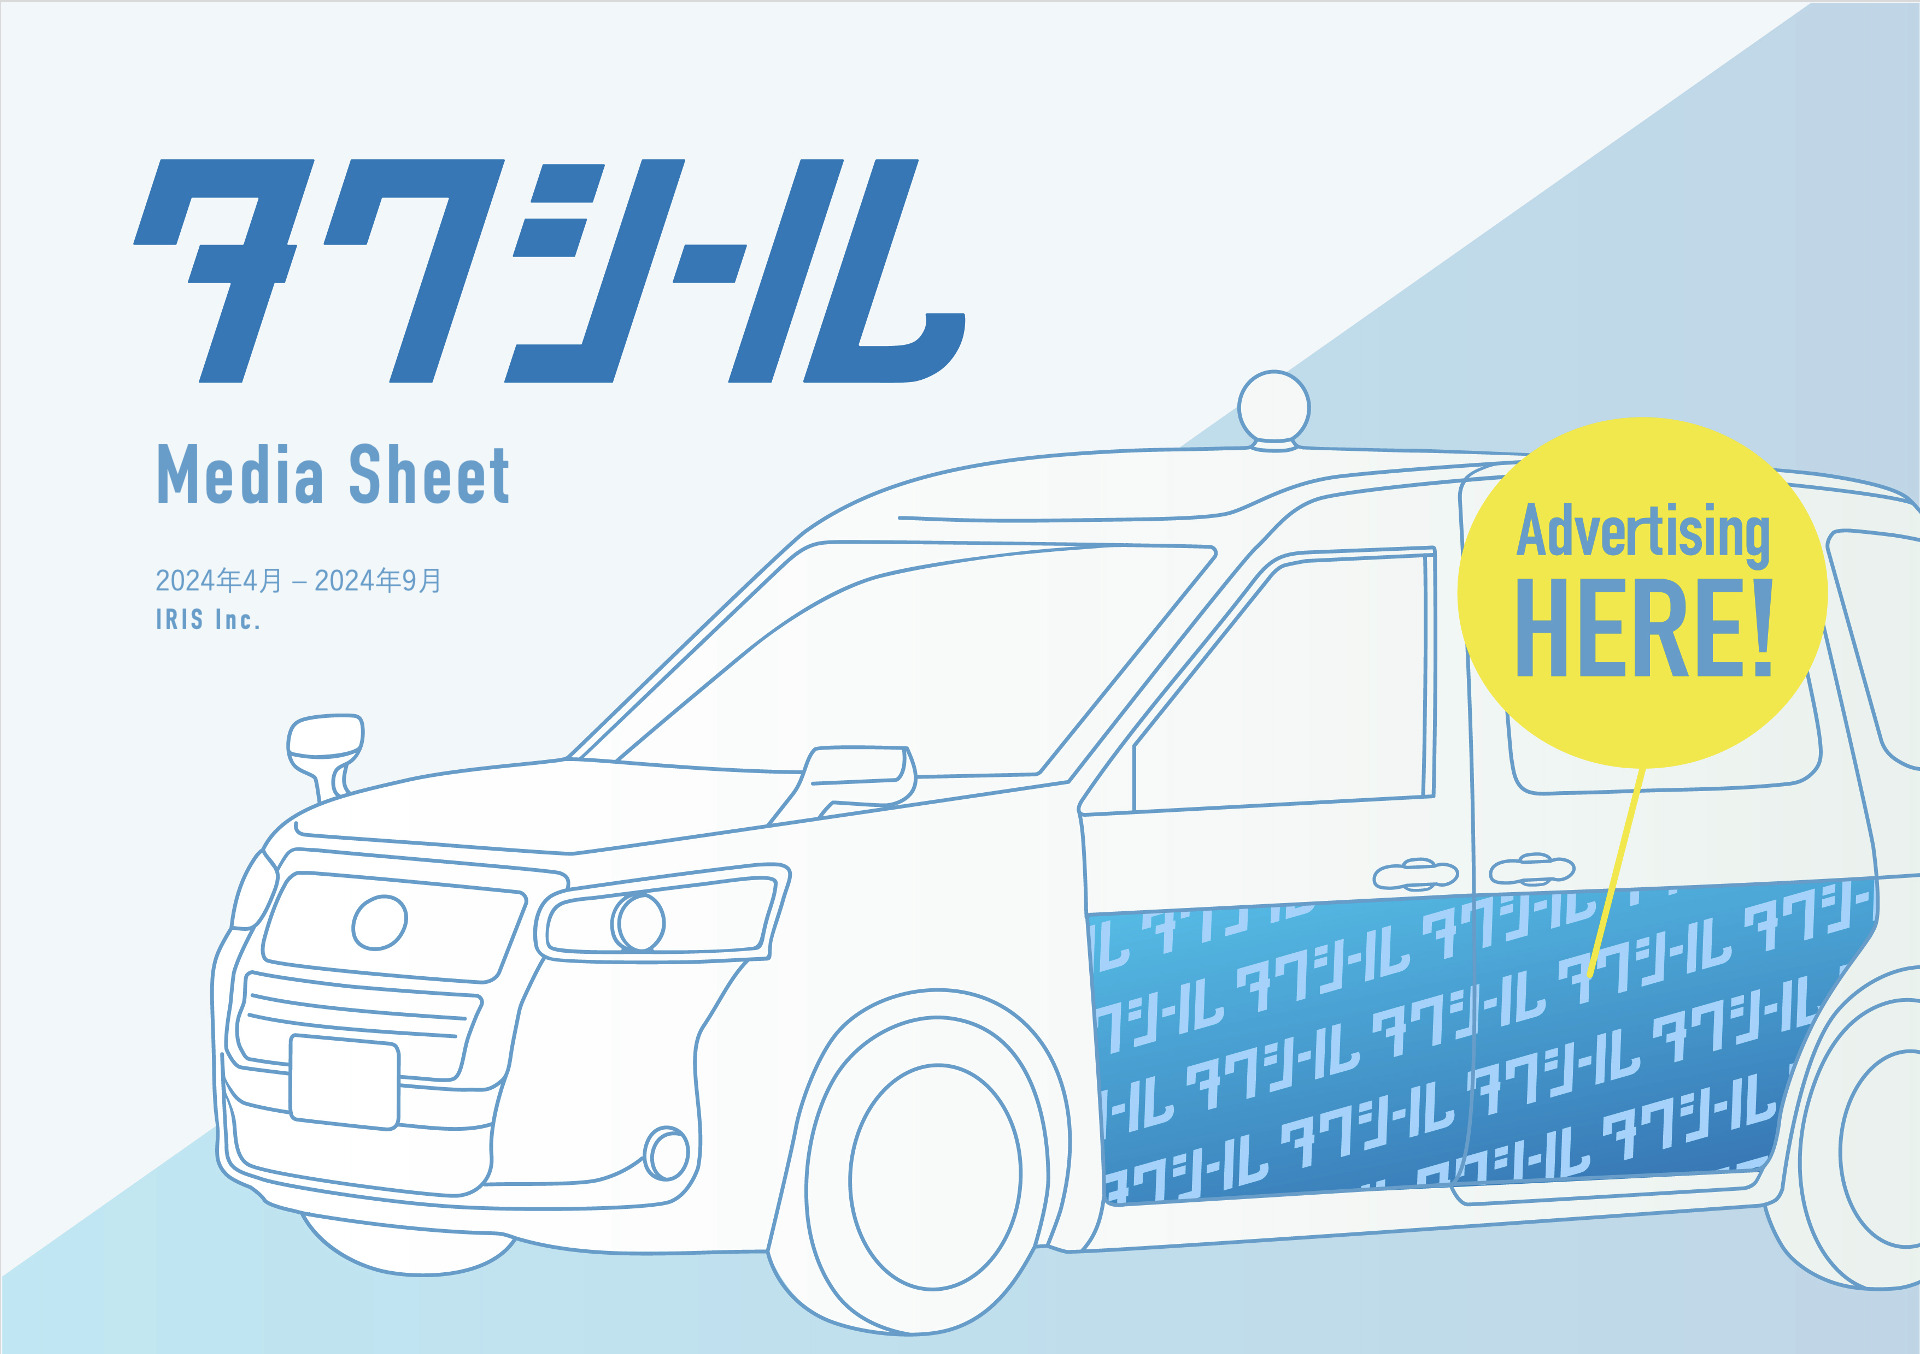 タクシーラッピング広告「タクシール」、2024年4-9月の媒体資料を公開　 〜掲載エリアに「名古屋」、オプションに「車内サンプリング」を追加〜